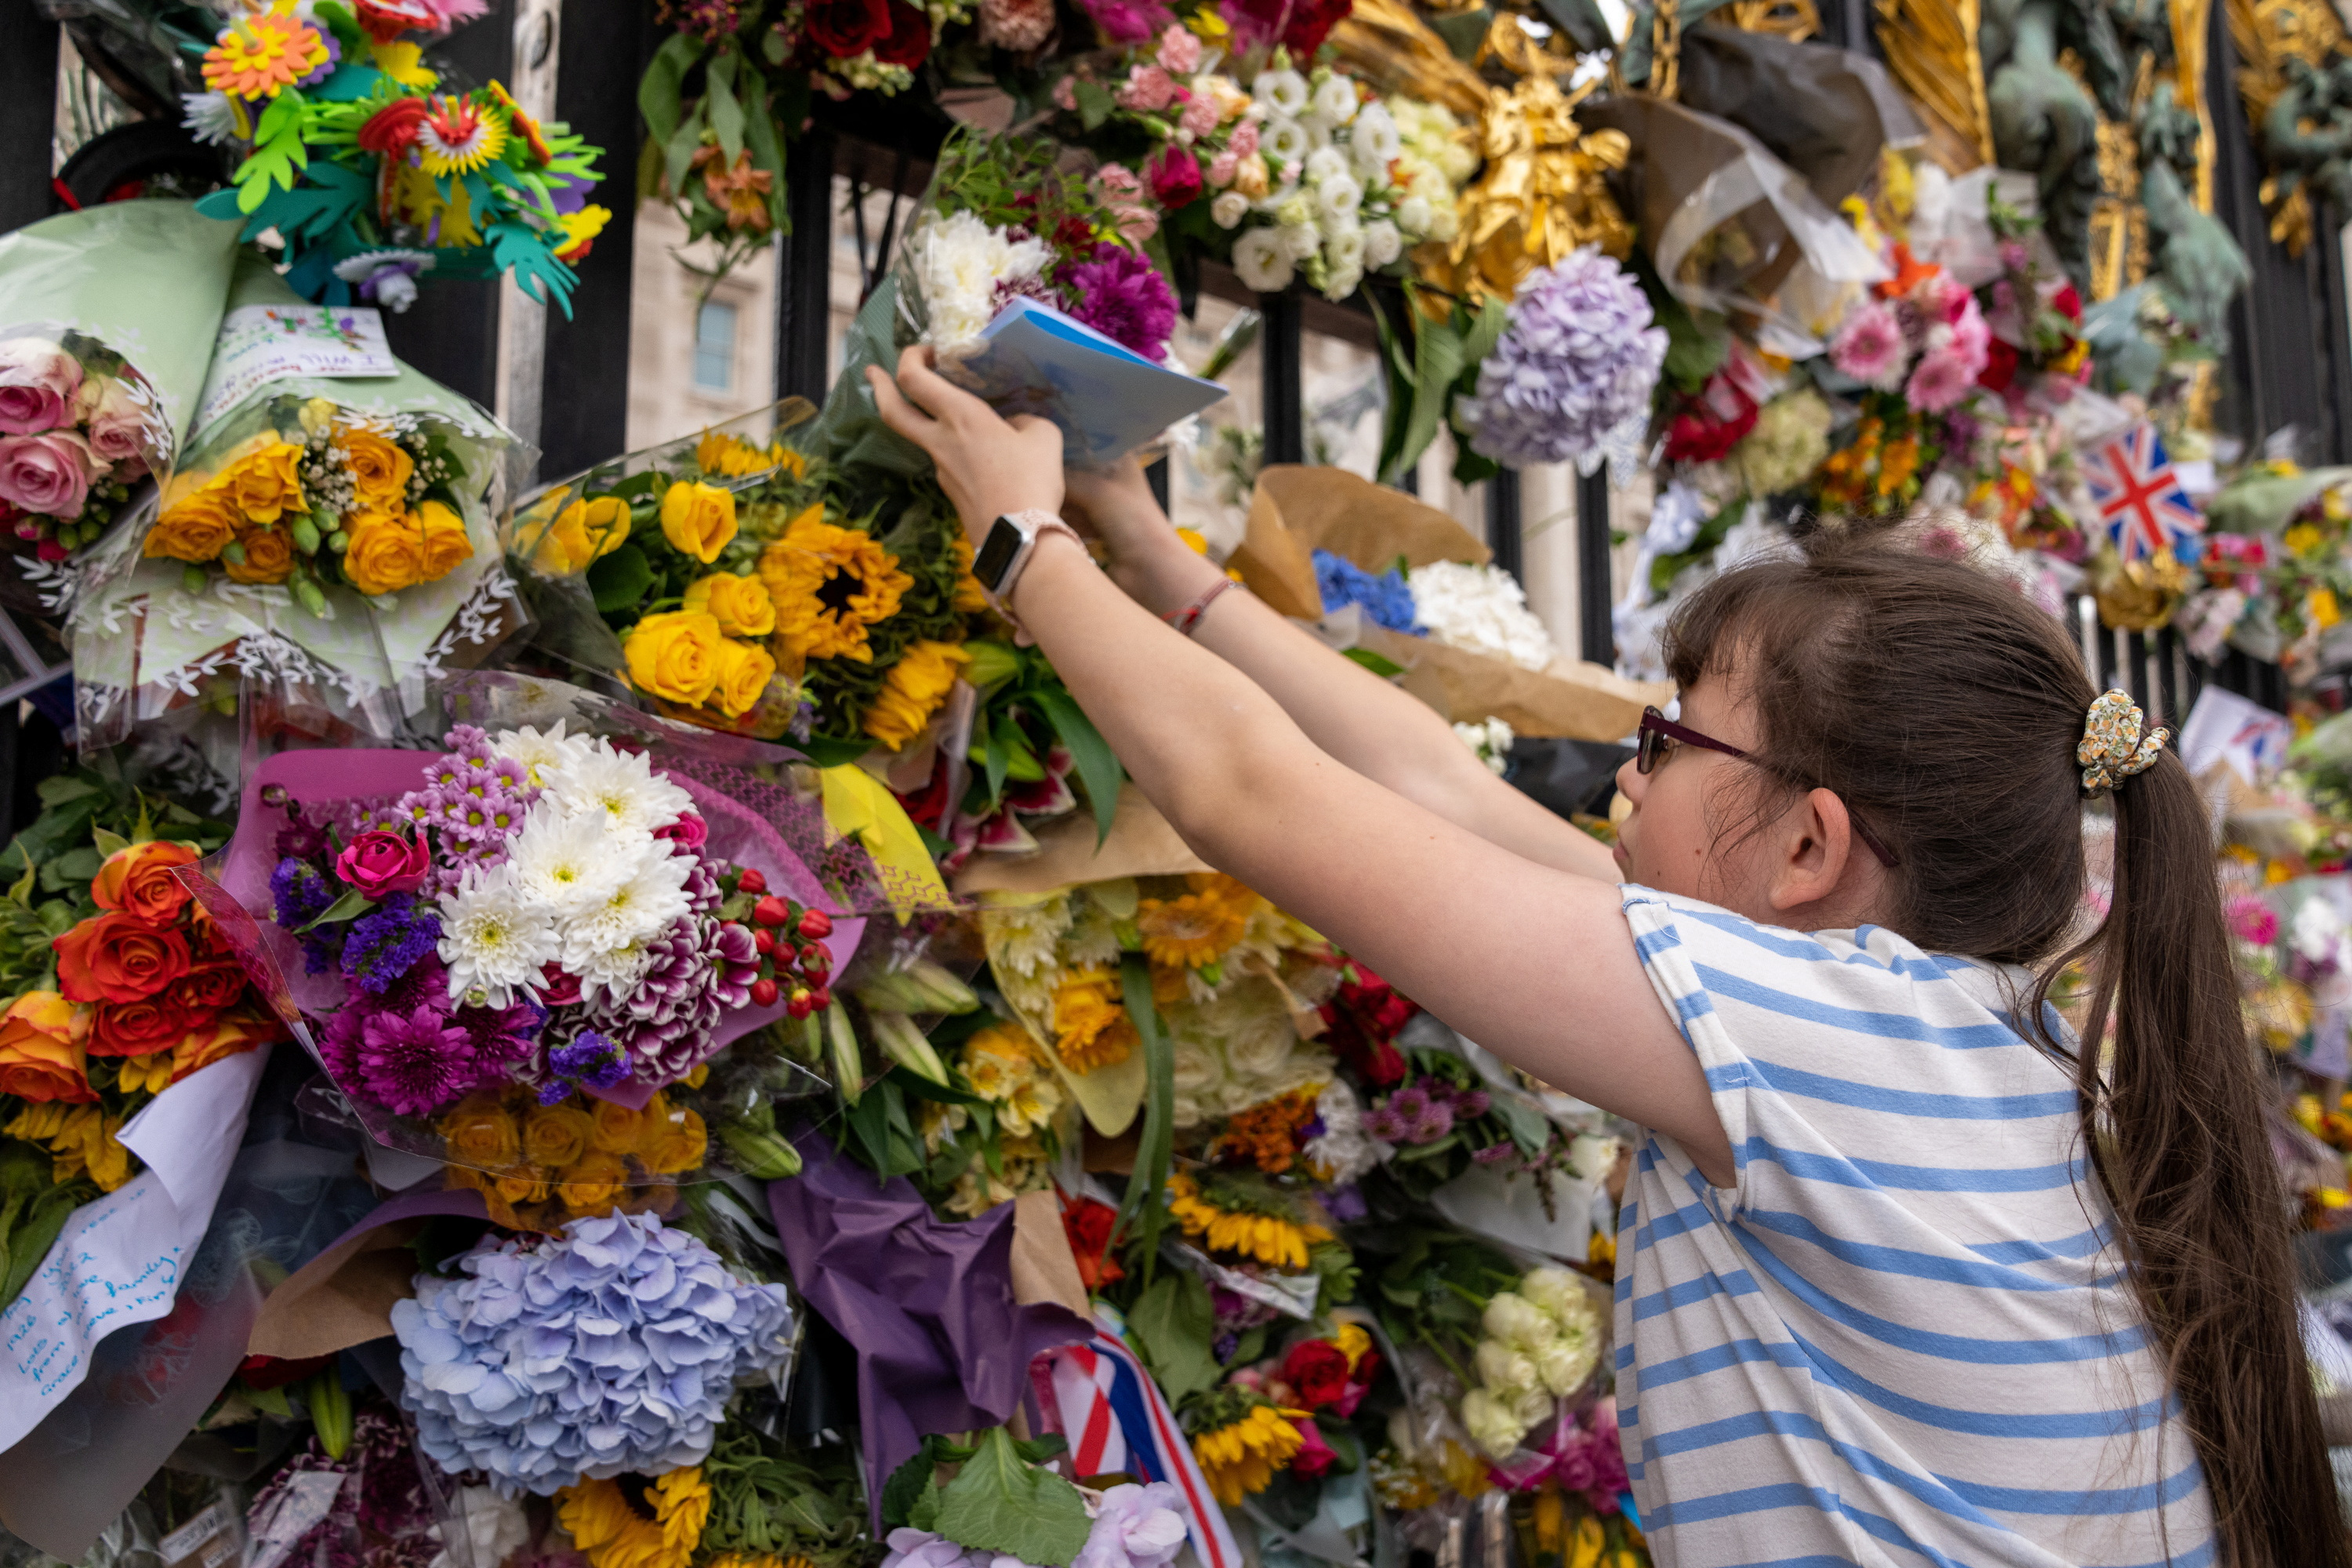 Un niña coloca flores en la puerta del Palacio Buckingham
REUTERS/Maja Smiejkowska